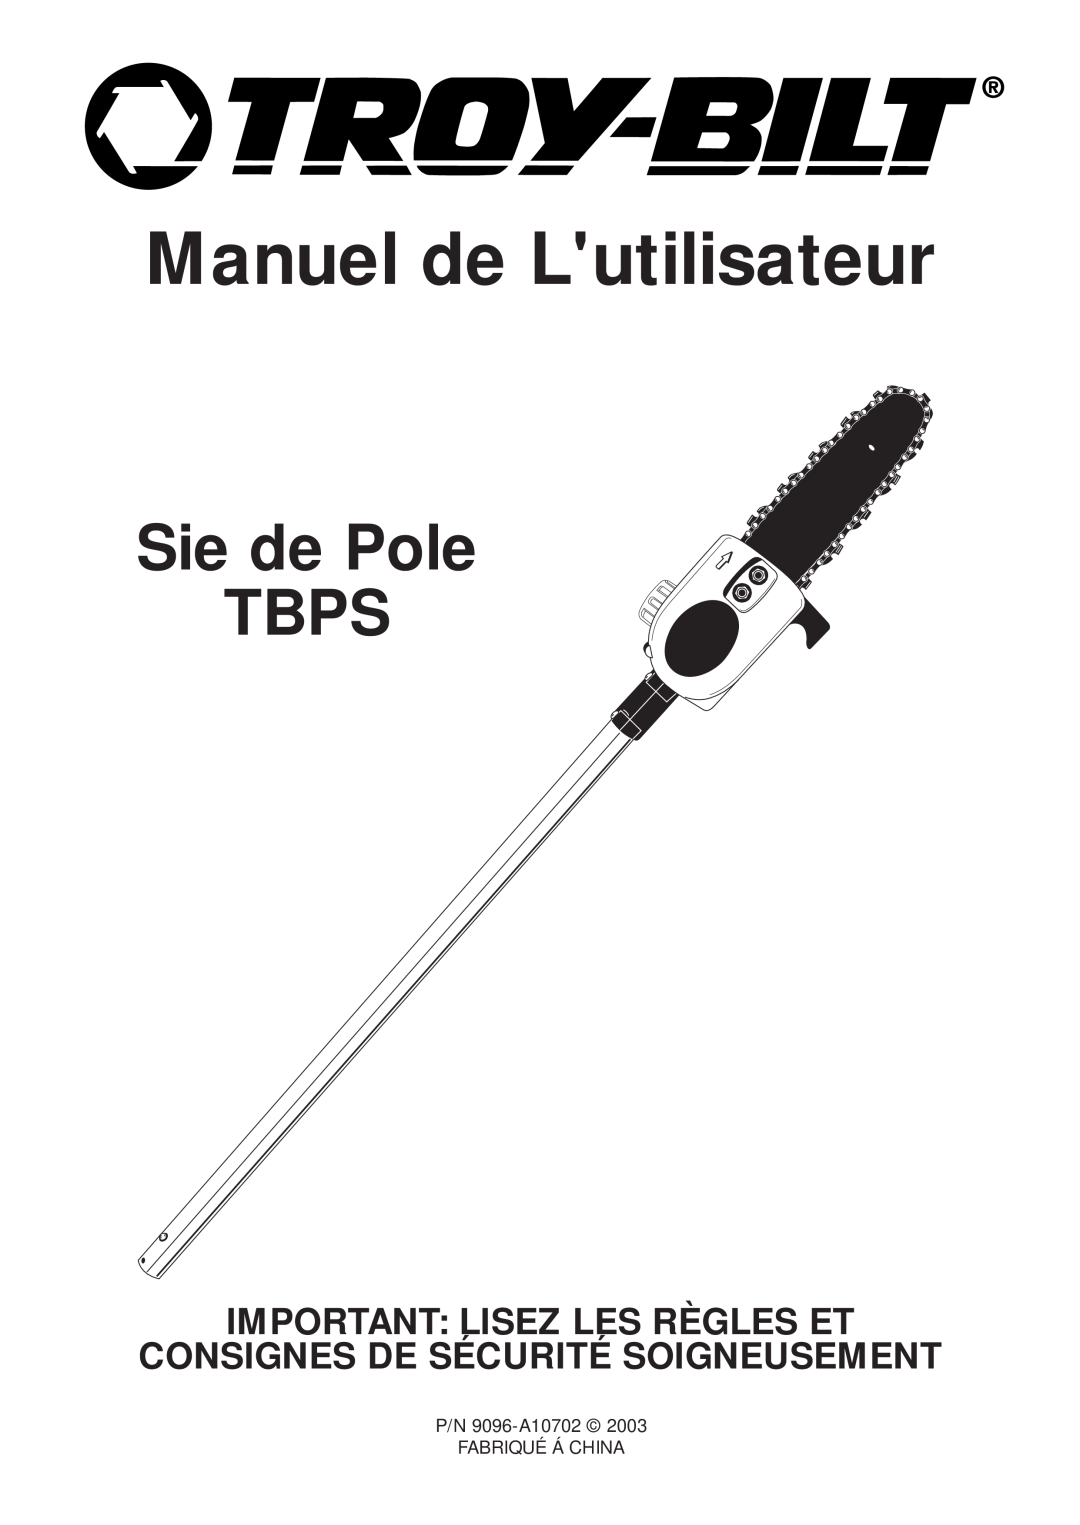 MTD manual Manuel de Lutilisateur, Sie de Pole TBPS, Important Lisez Les Règles Et, Consignes De Sécurité Soigneusement 